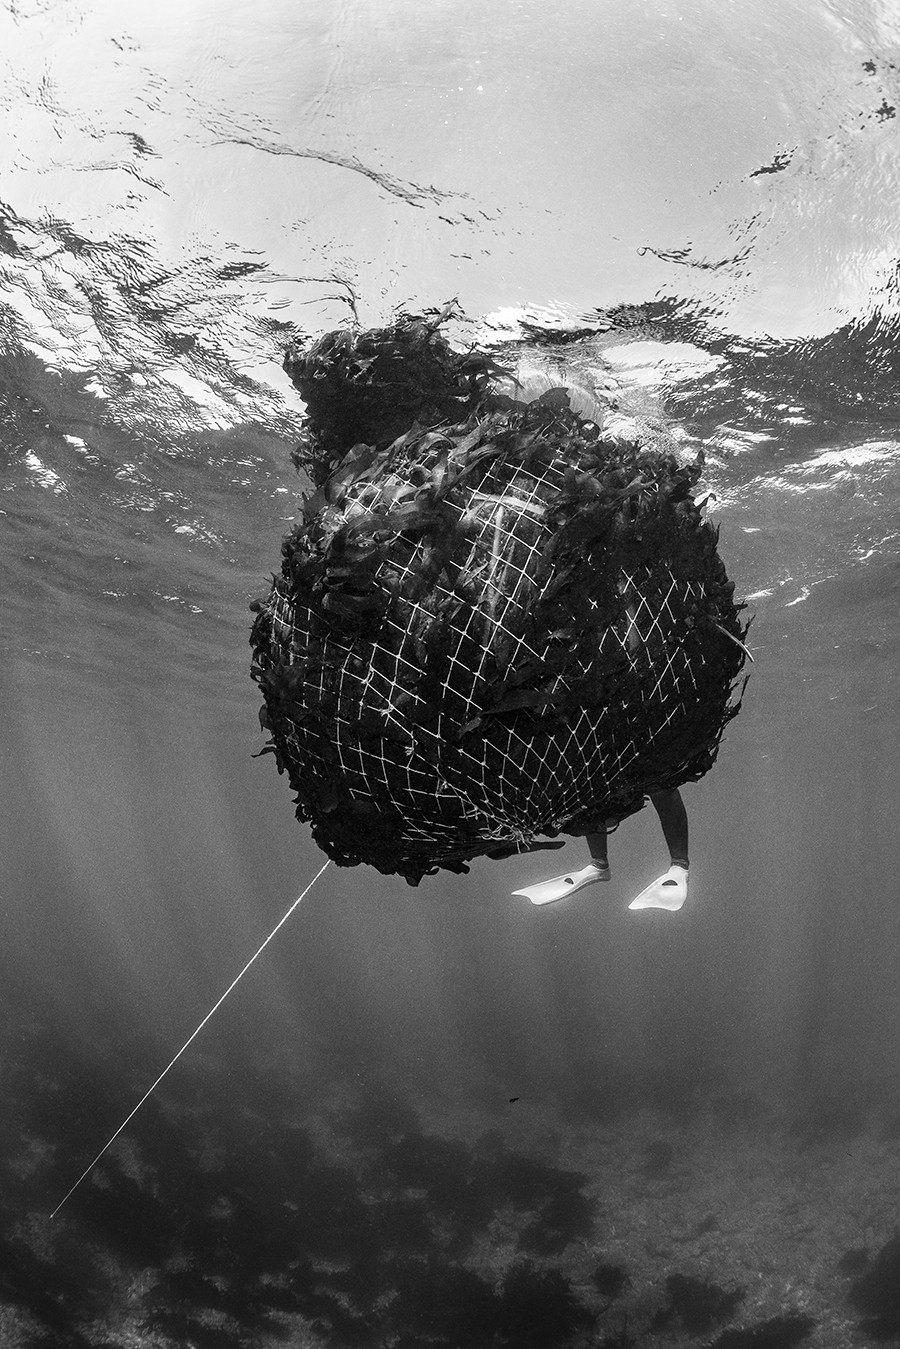 A água estava a 15°C, conta o fotográfo, e esta haenyeo de 75 anos carregava um cesto de 120 kg de algas miyeok, consideradas um superalimento por suas propriedades nutricionais (Foto: Luciano Candisani)